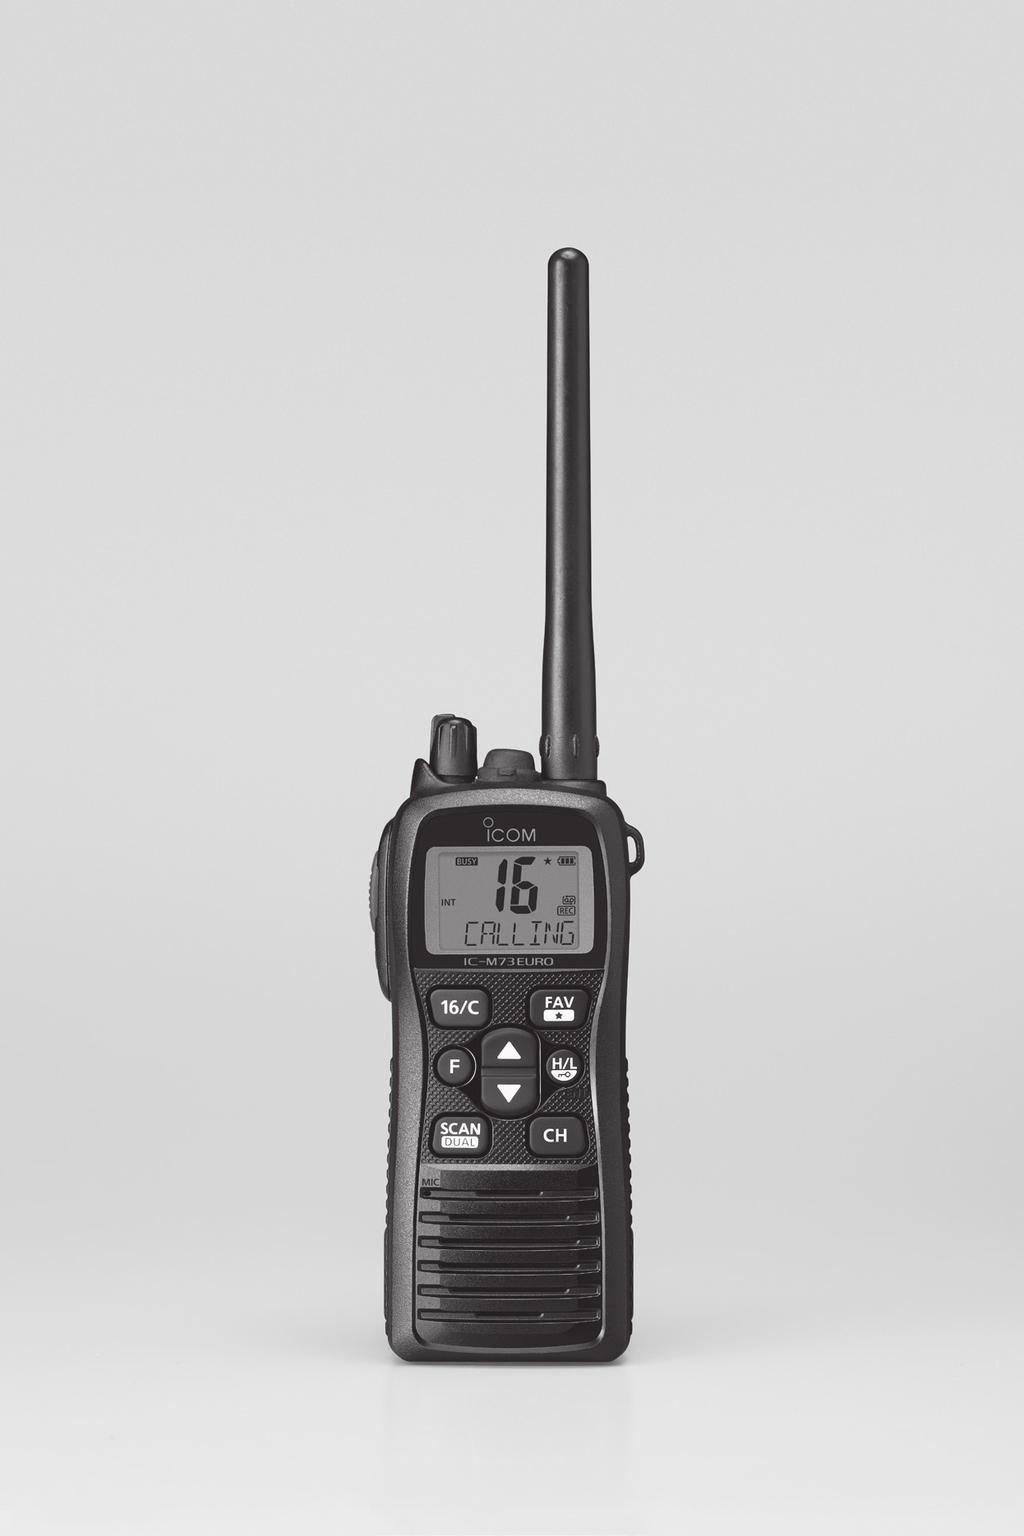 BRUKSANVISNING VHF MARINRADIO ic- m73 Detta är en kortfattad